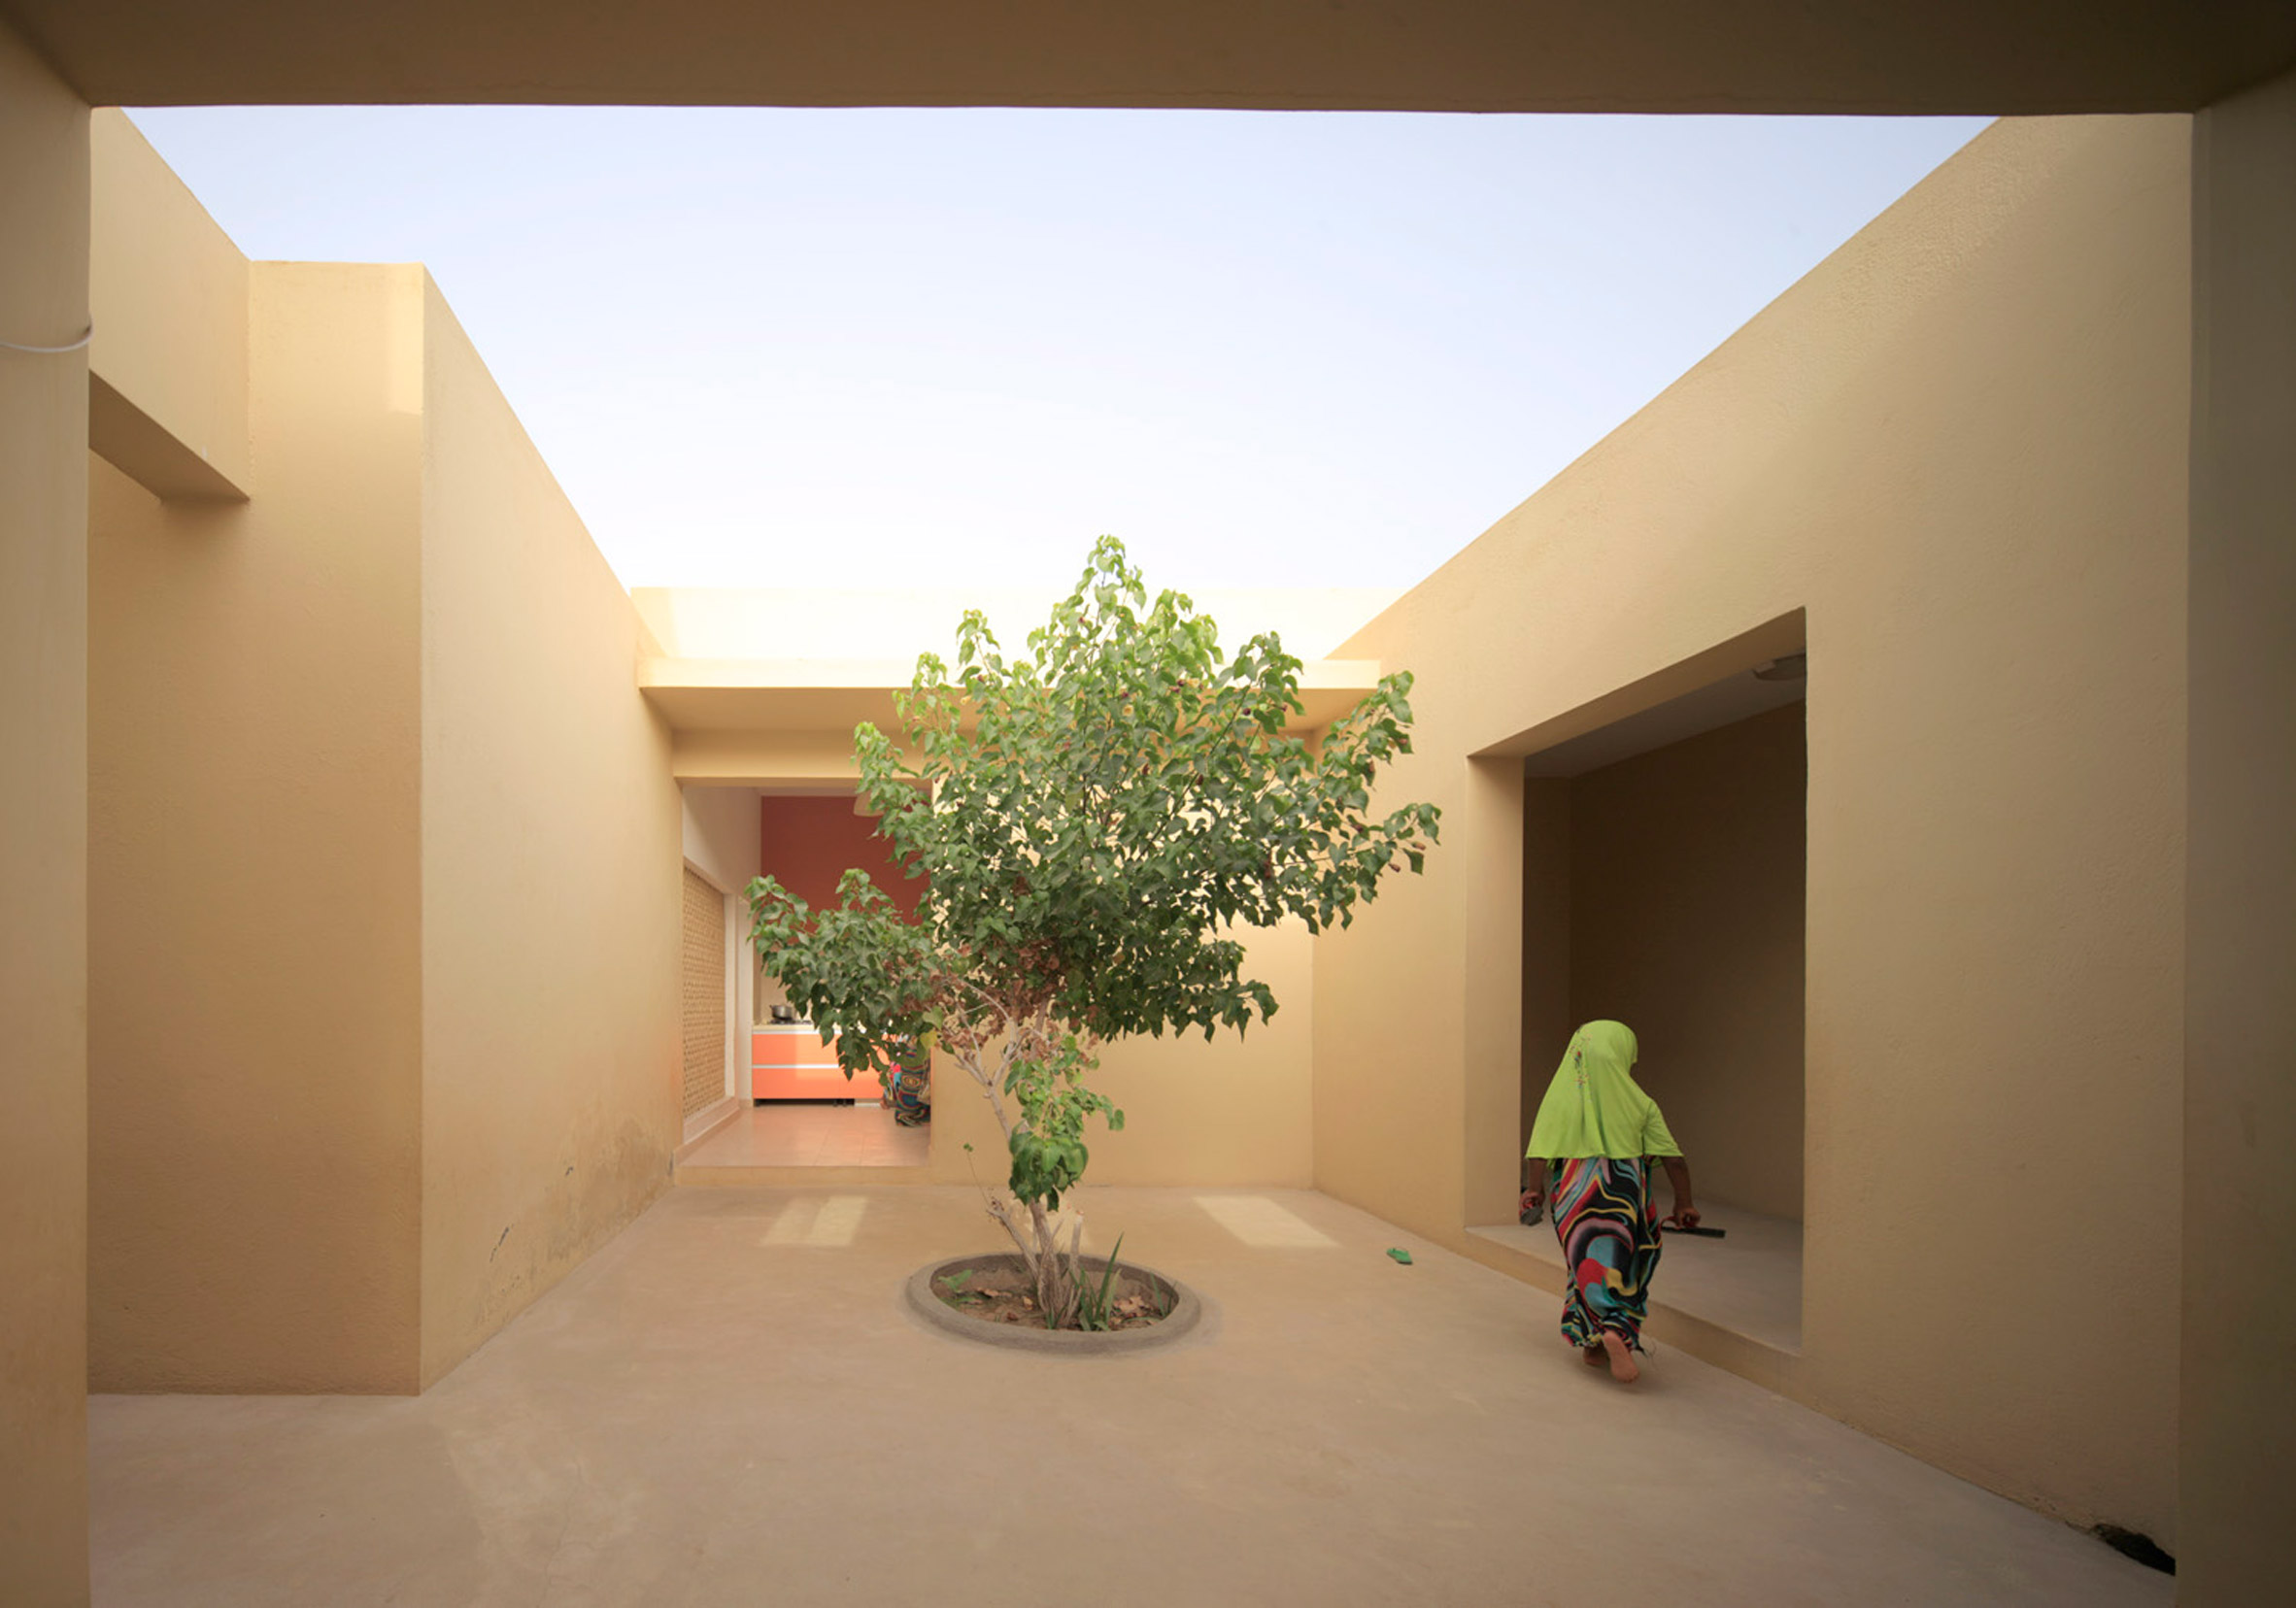 SOS Children's Village by Urko Sanchez Architects